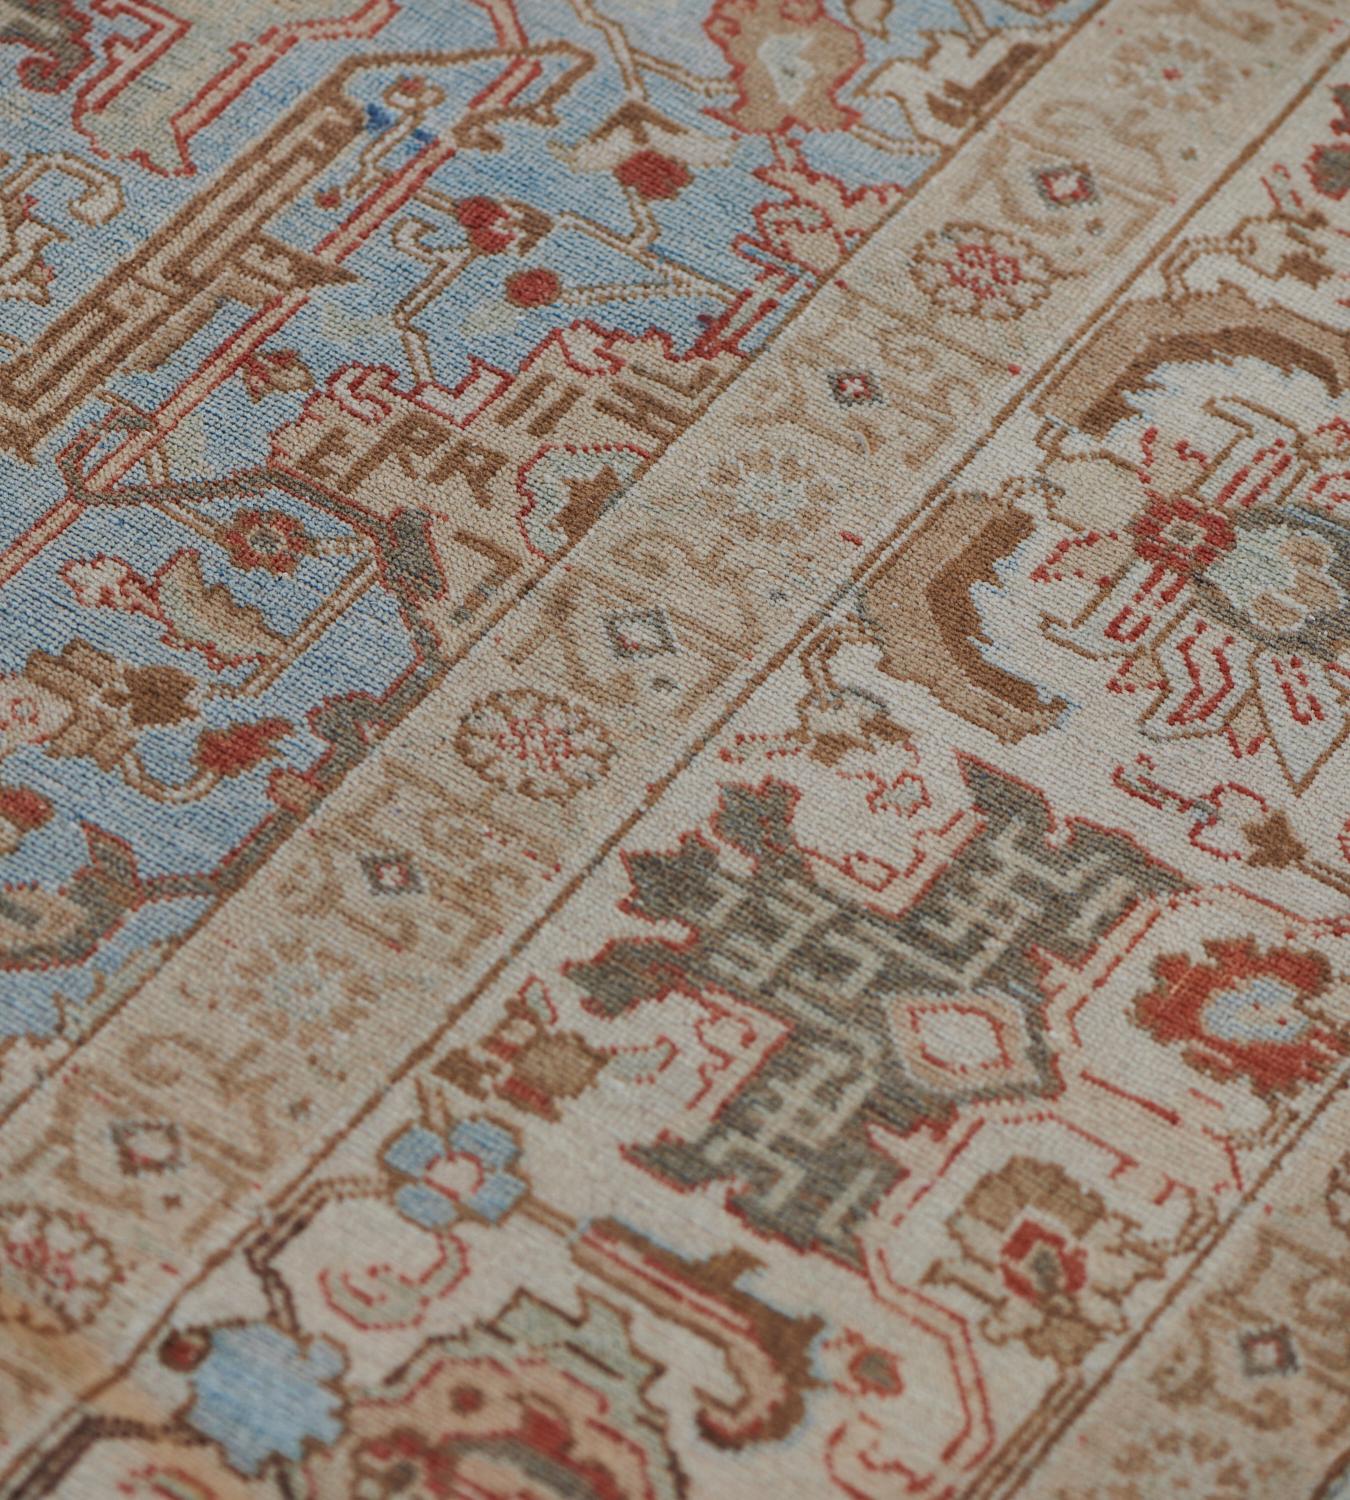 Ce tapis Tabriz ancien, datant de 1920, présente un champ bleu clair avec un motif général de palmettes partielles angulaires florales et feuillues gris clair et ivoire et de palmettes partielles rouge brique et chocolat nuancé, dans une large